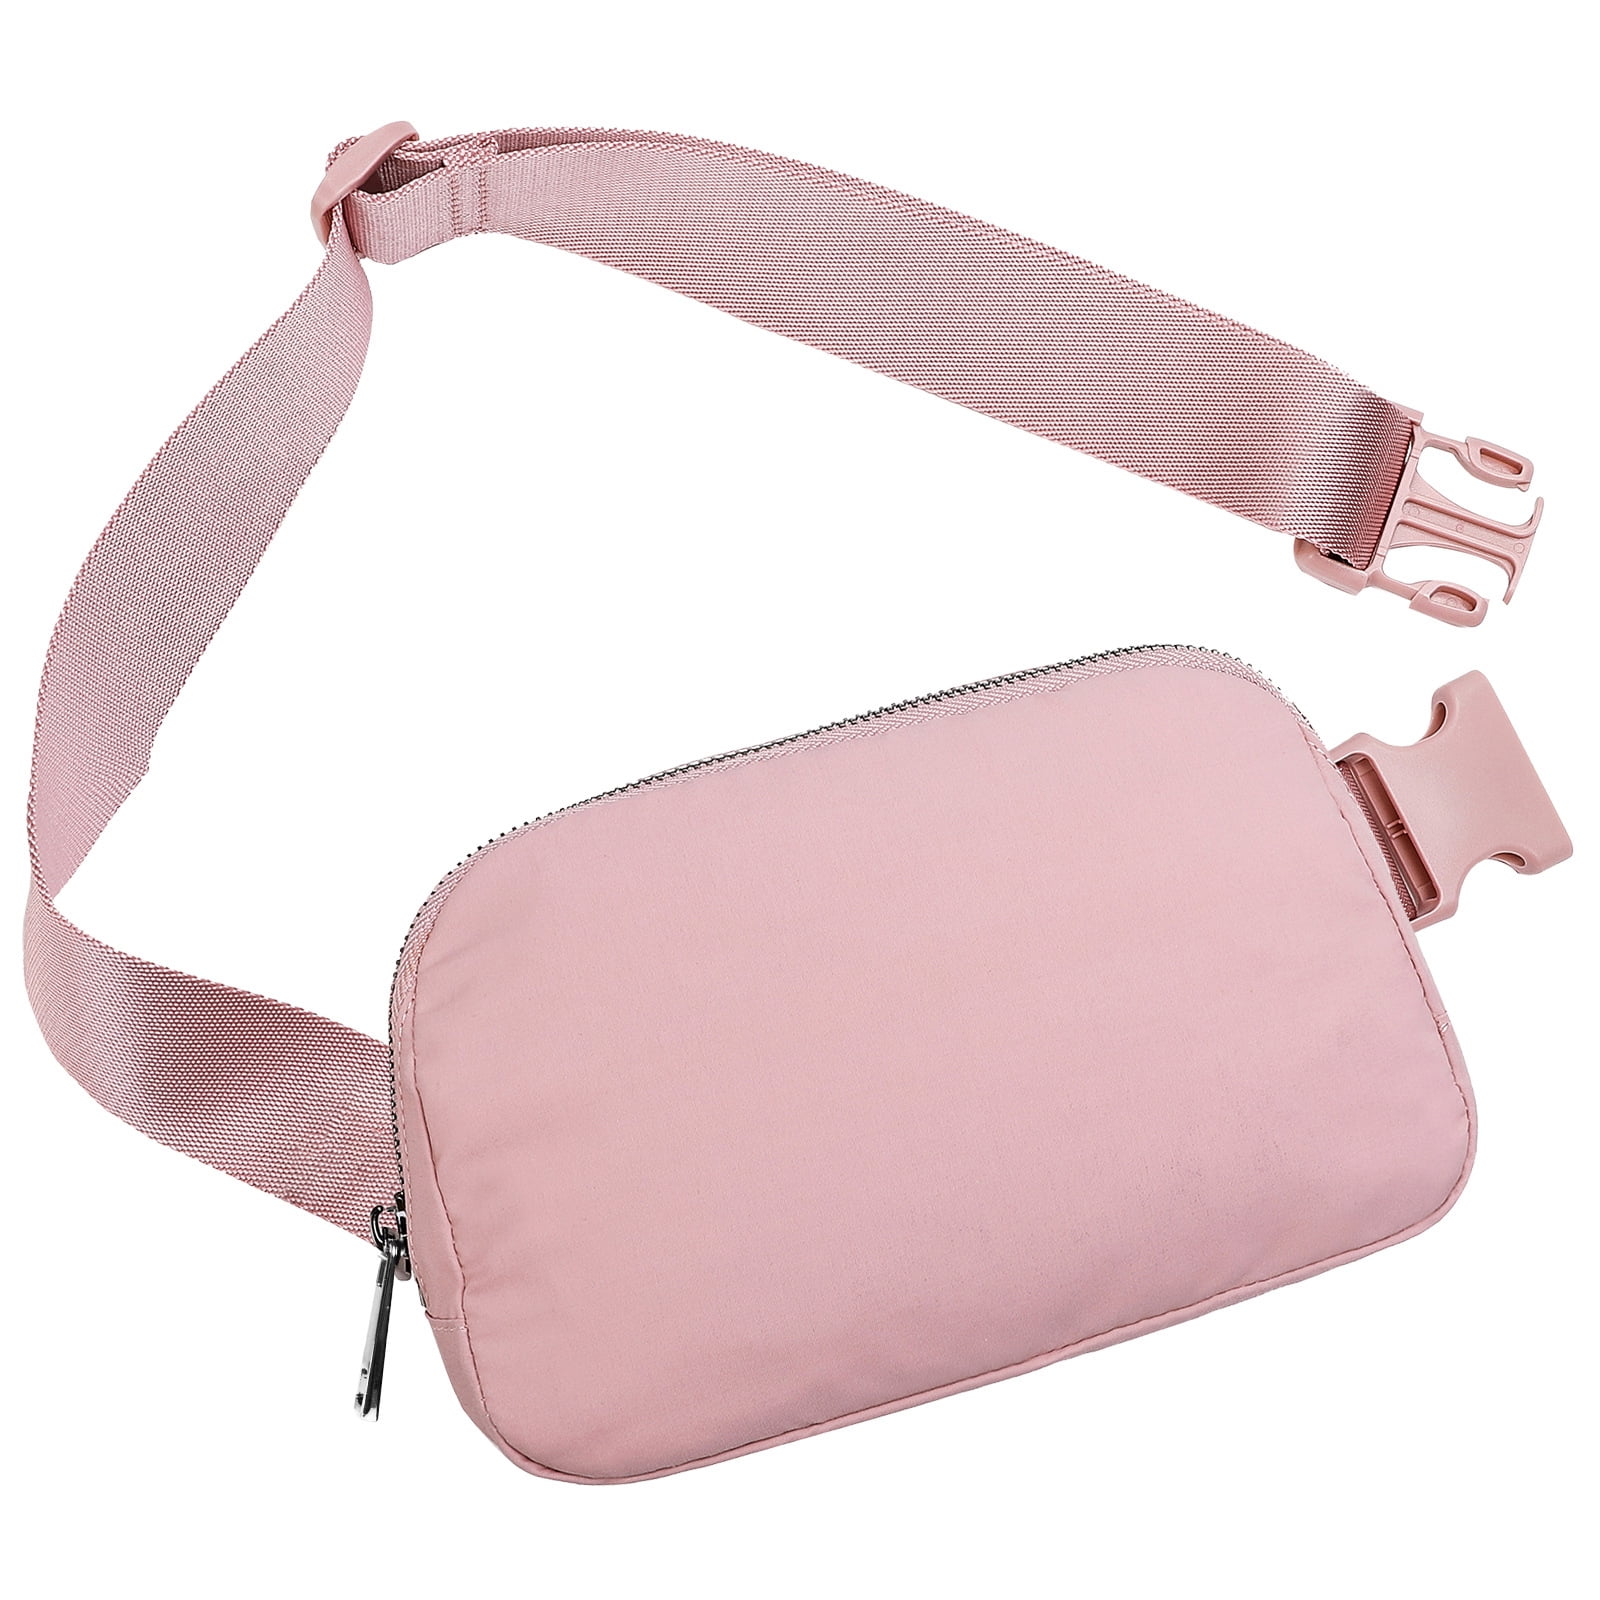 Lighed kredit hvid Unisex Mini Belt Bag with Adjustable Strap, Crossbody Fanny Pack for  Traveling (Pink) - Walmart.com